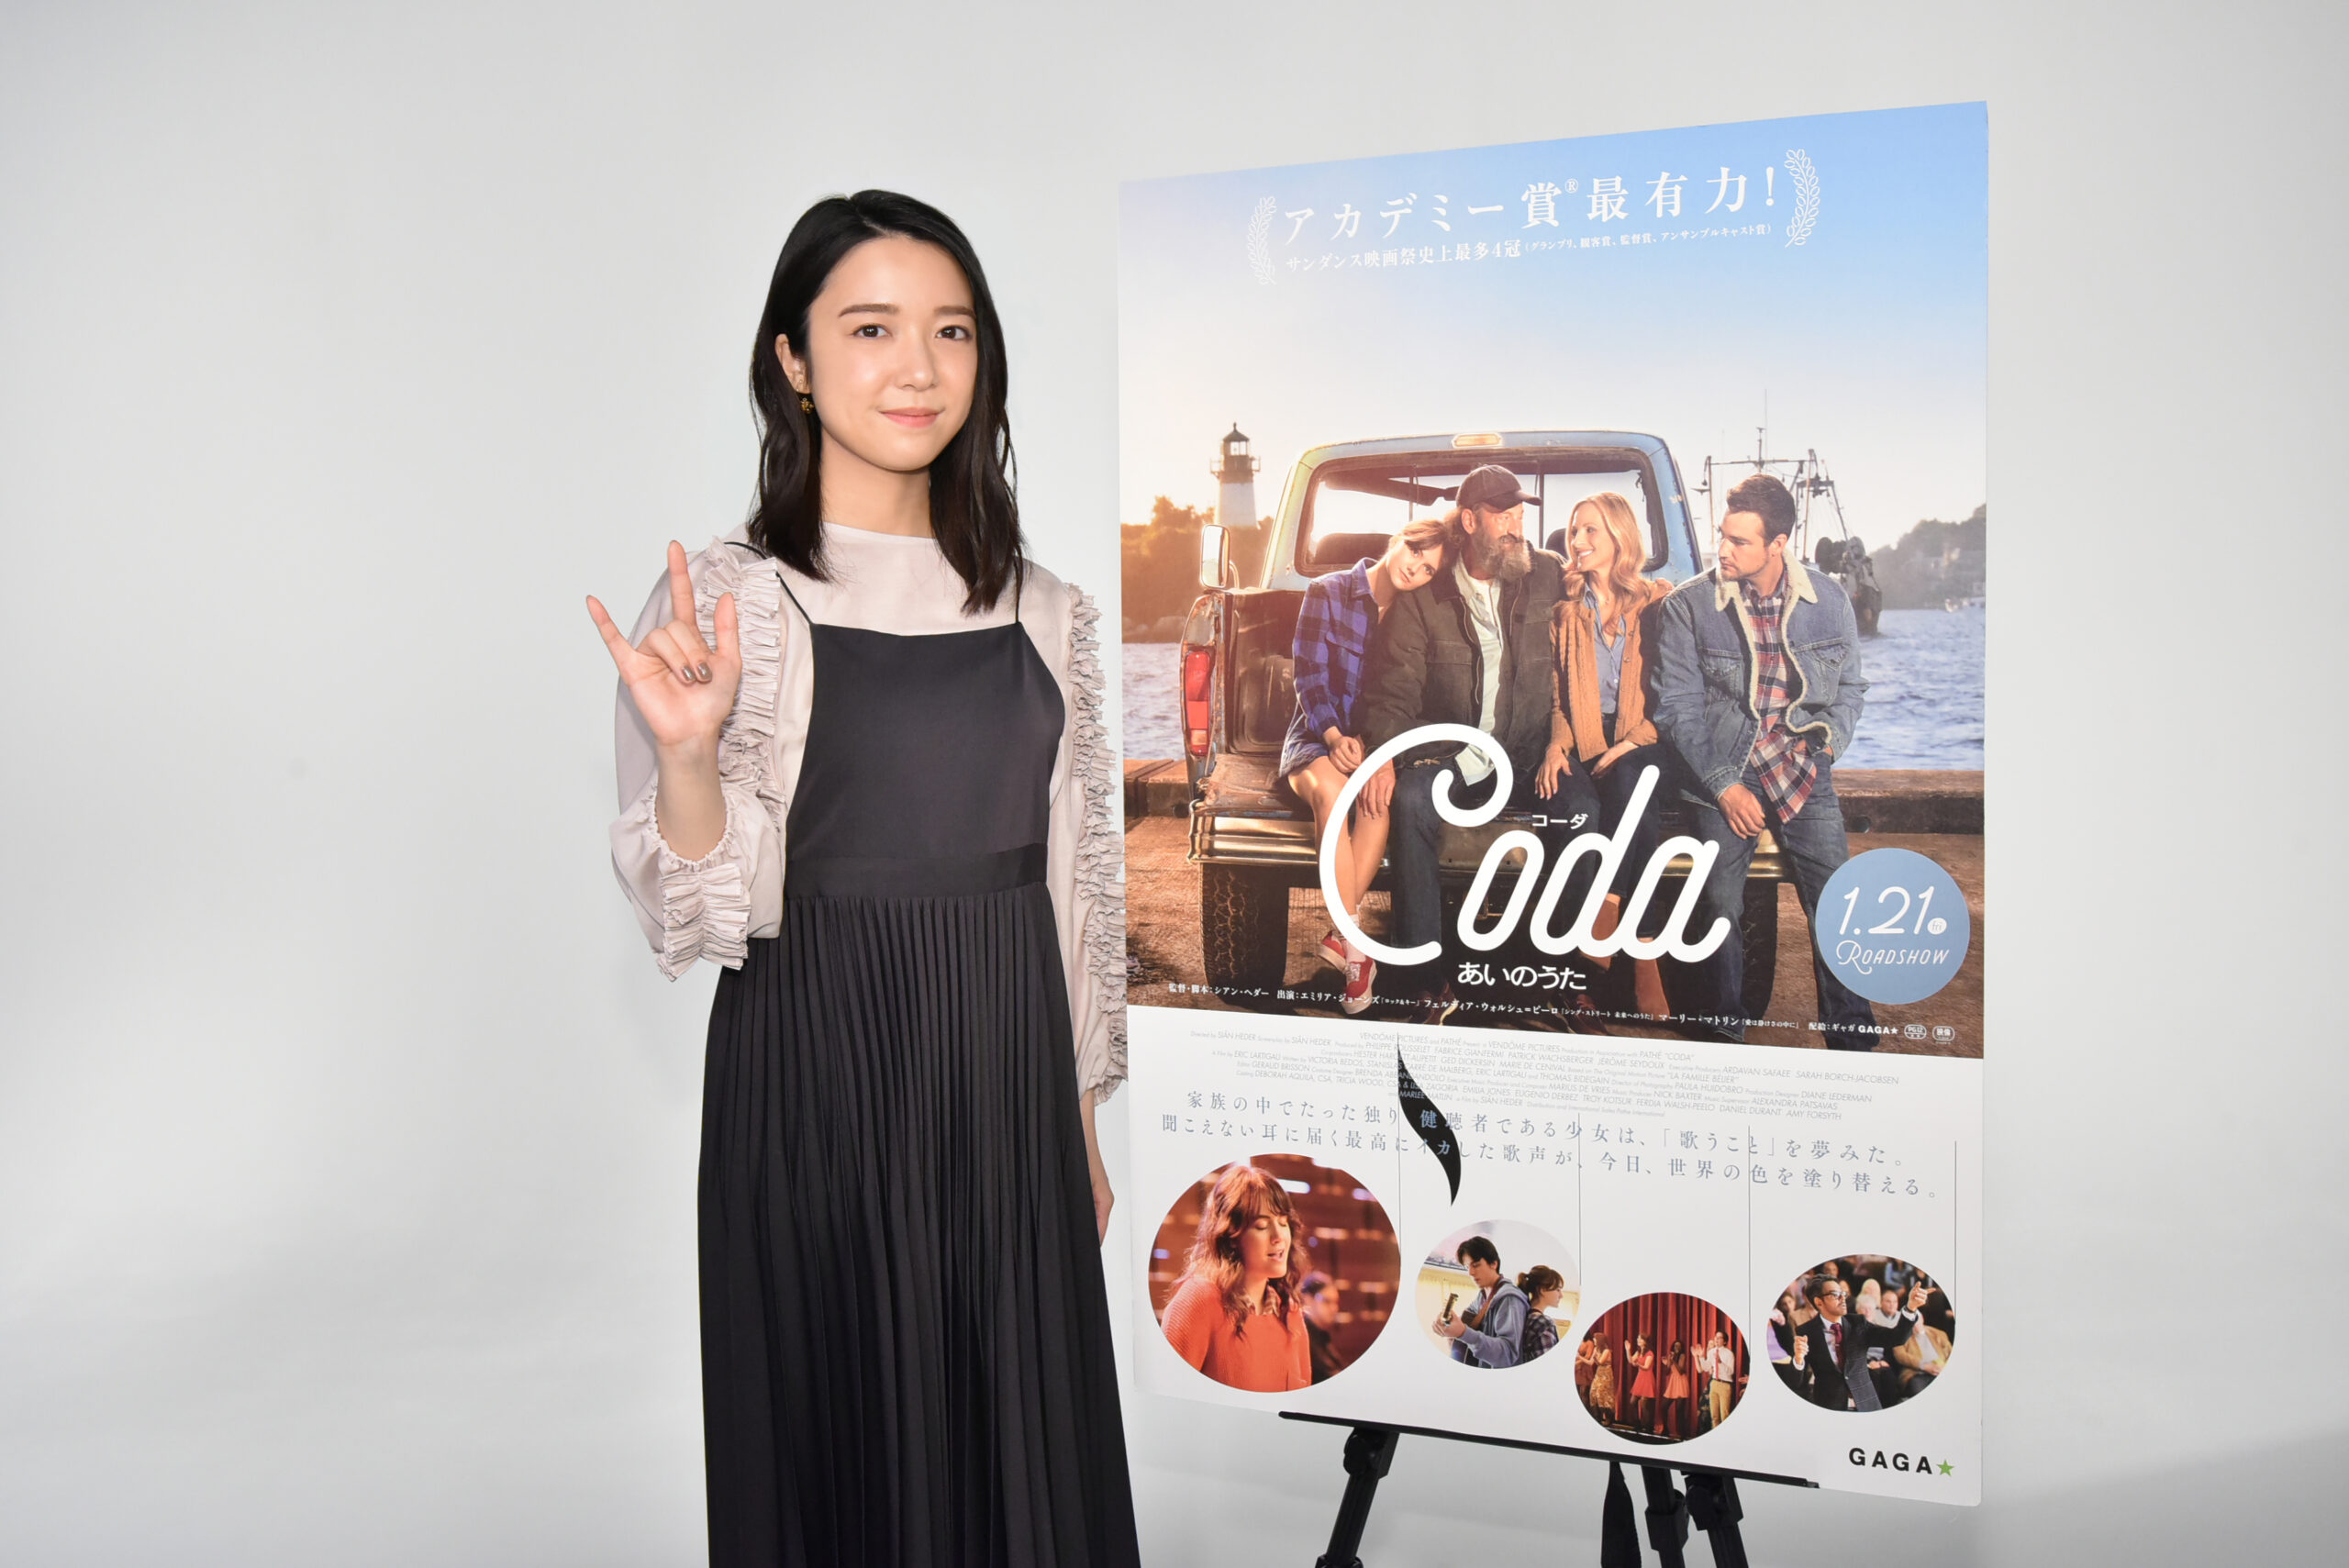 日本初公開のクロアチア映画4作品を上映する第一回「日本クロアチア映画祭」12月17日より開催